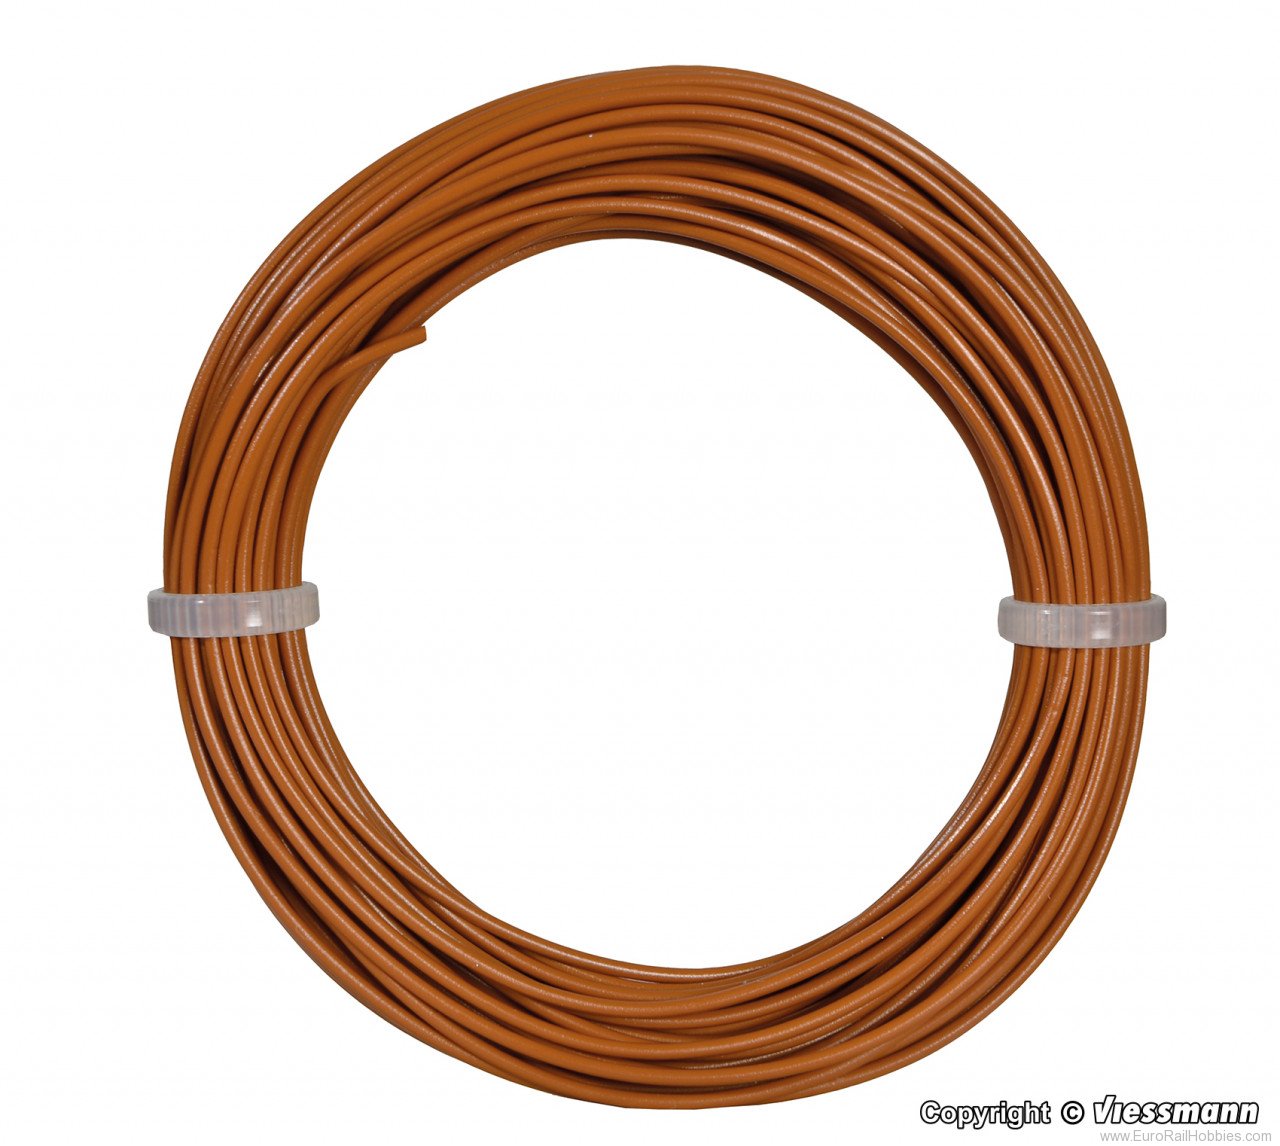 Viessmann 6865 Wire,0,14 mm dia., brown, 10 m